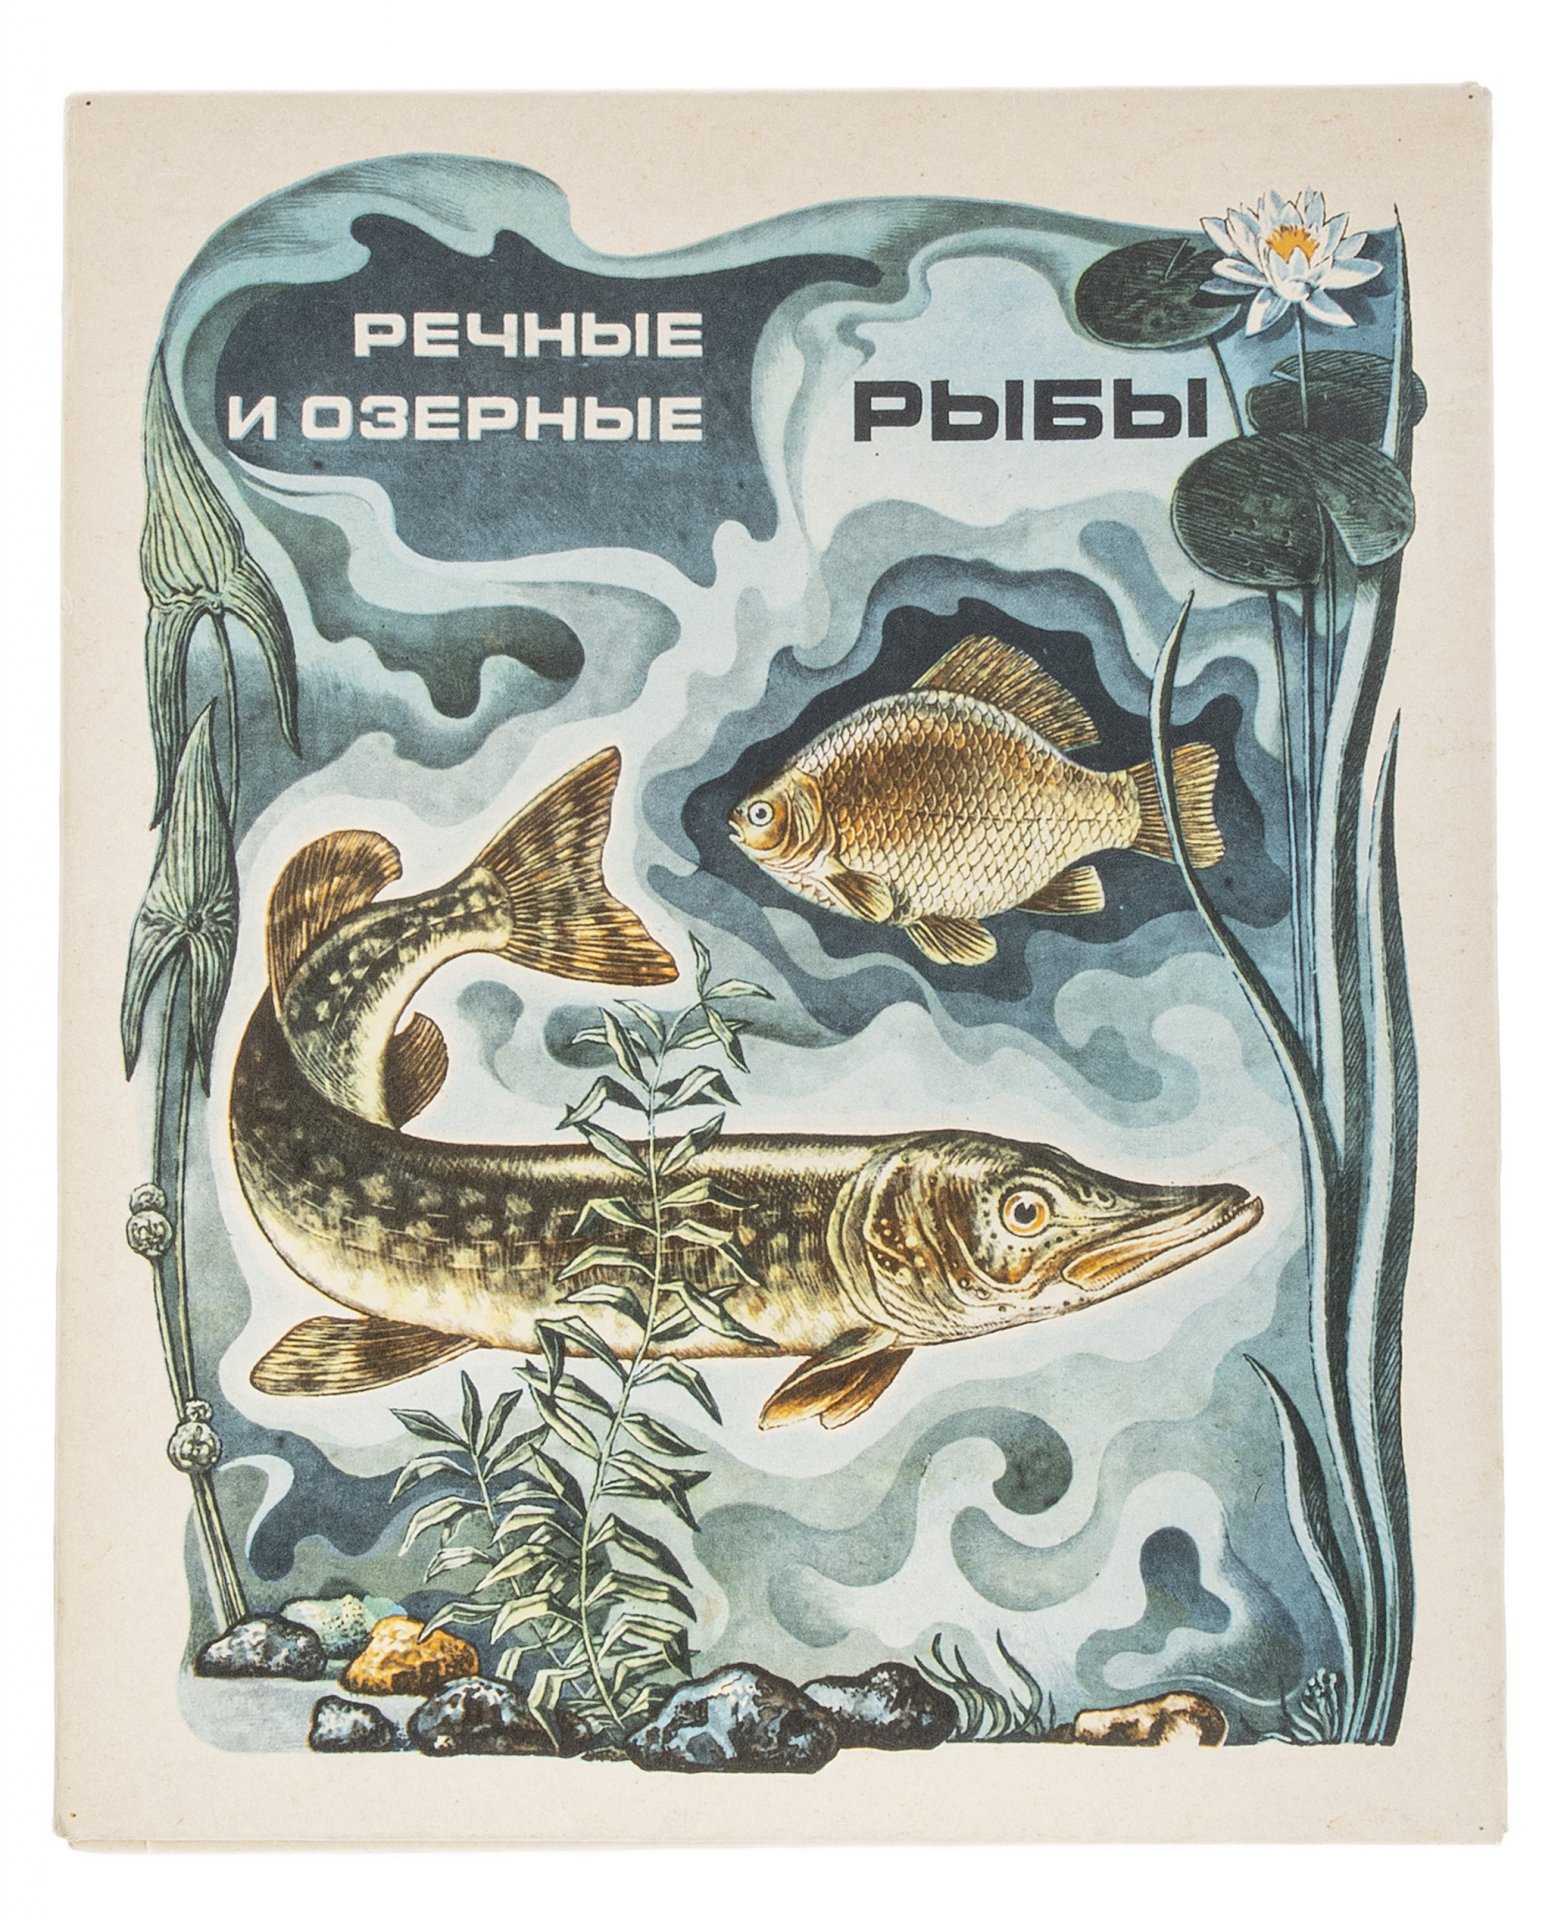 Рыба книги купить. Речные и озерные рыбы. Книги про рыб. Рыбы СССР книга. Книги пресноводных рыб.